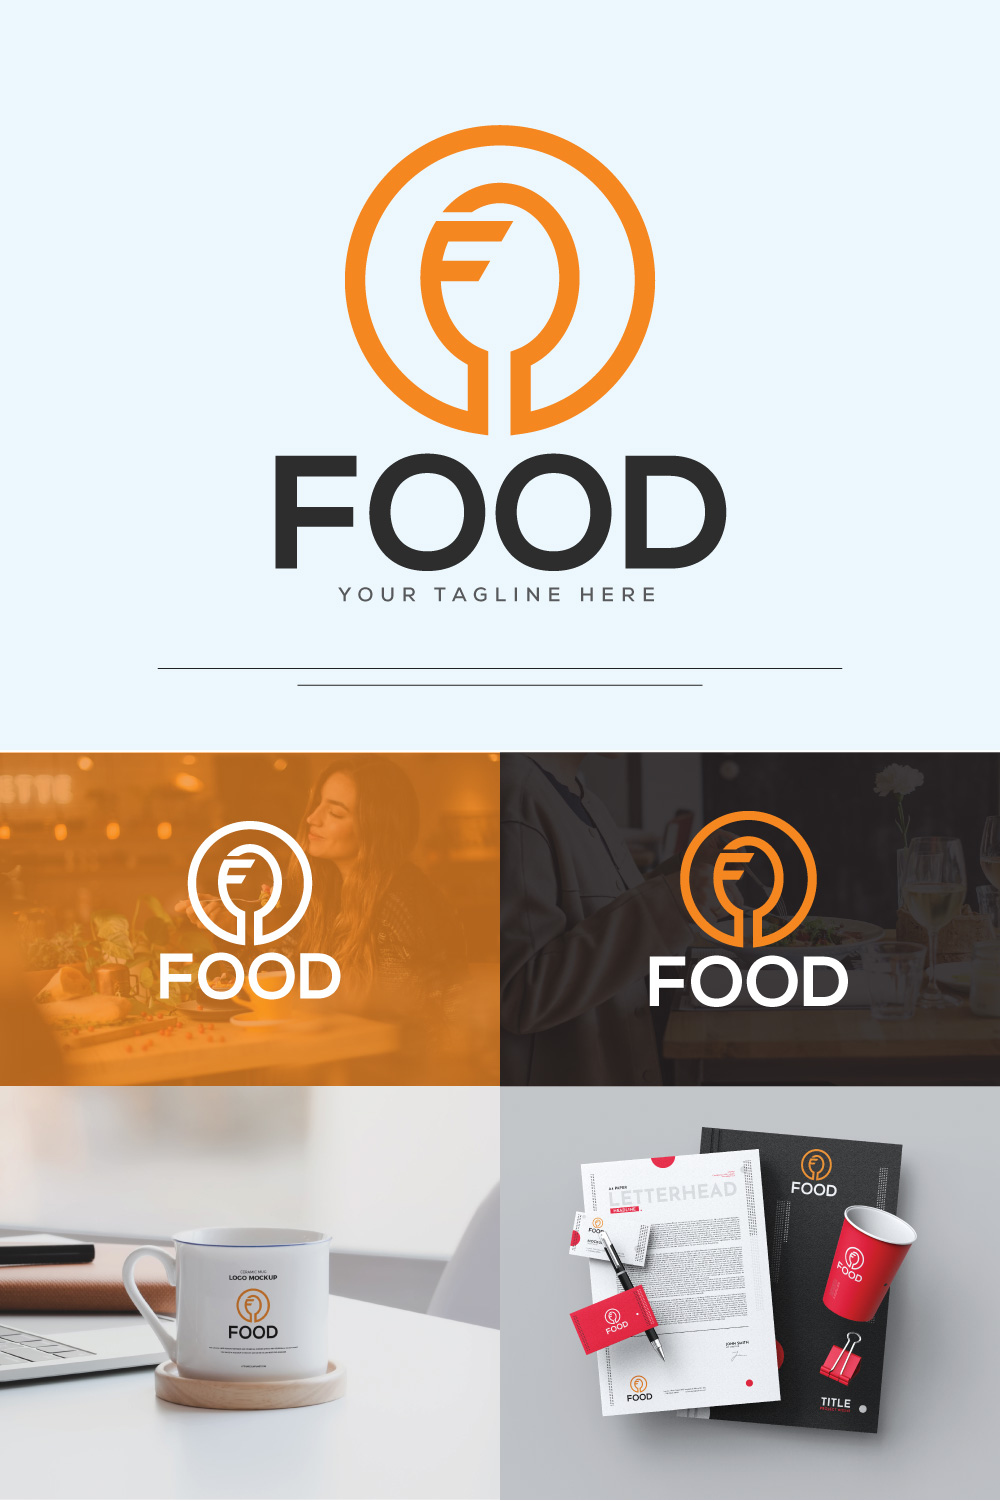 Letter F - Food Logo pinterst image.